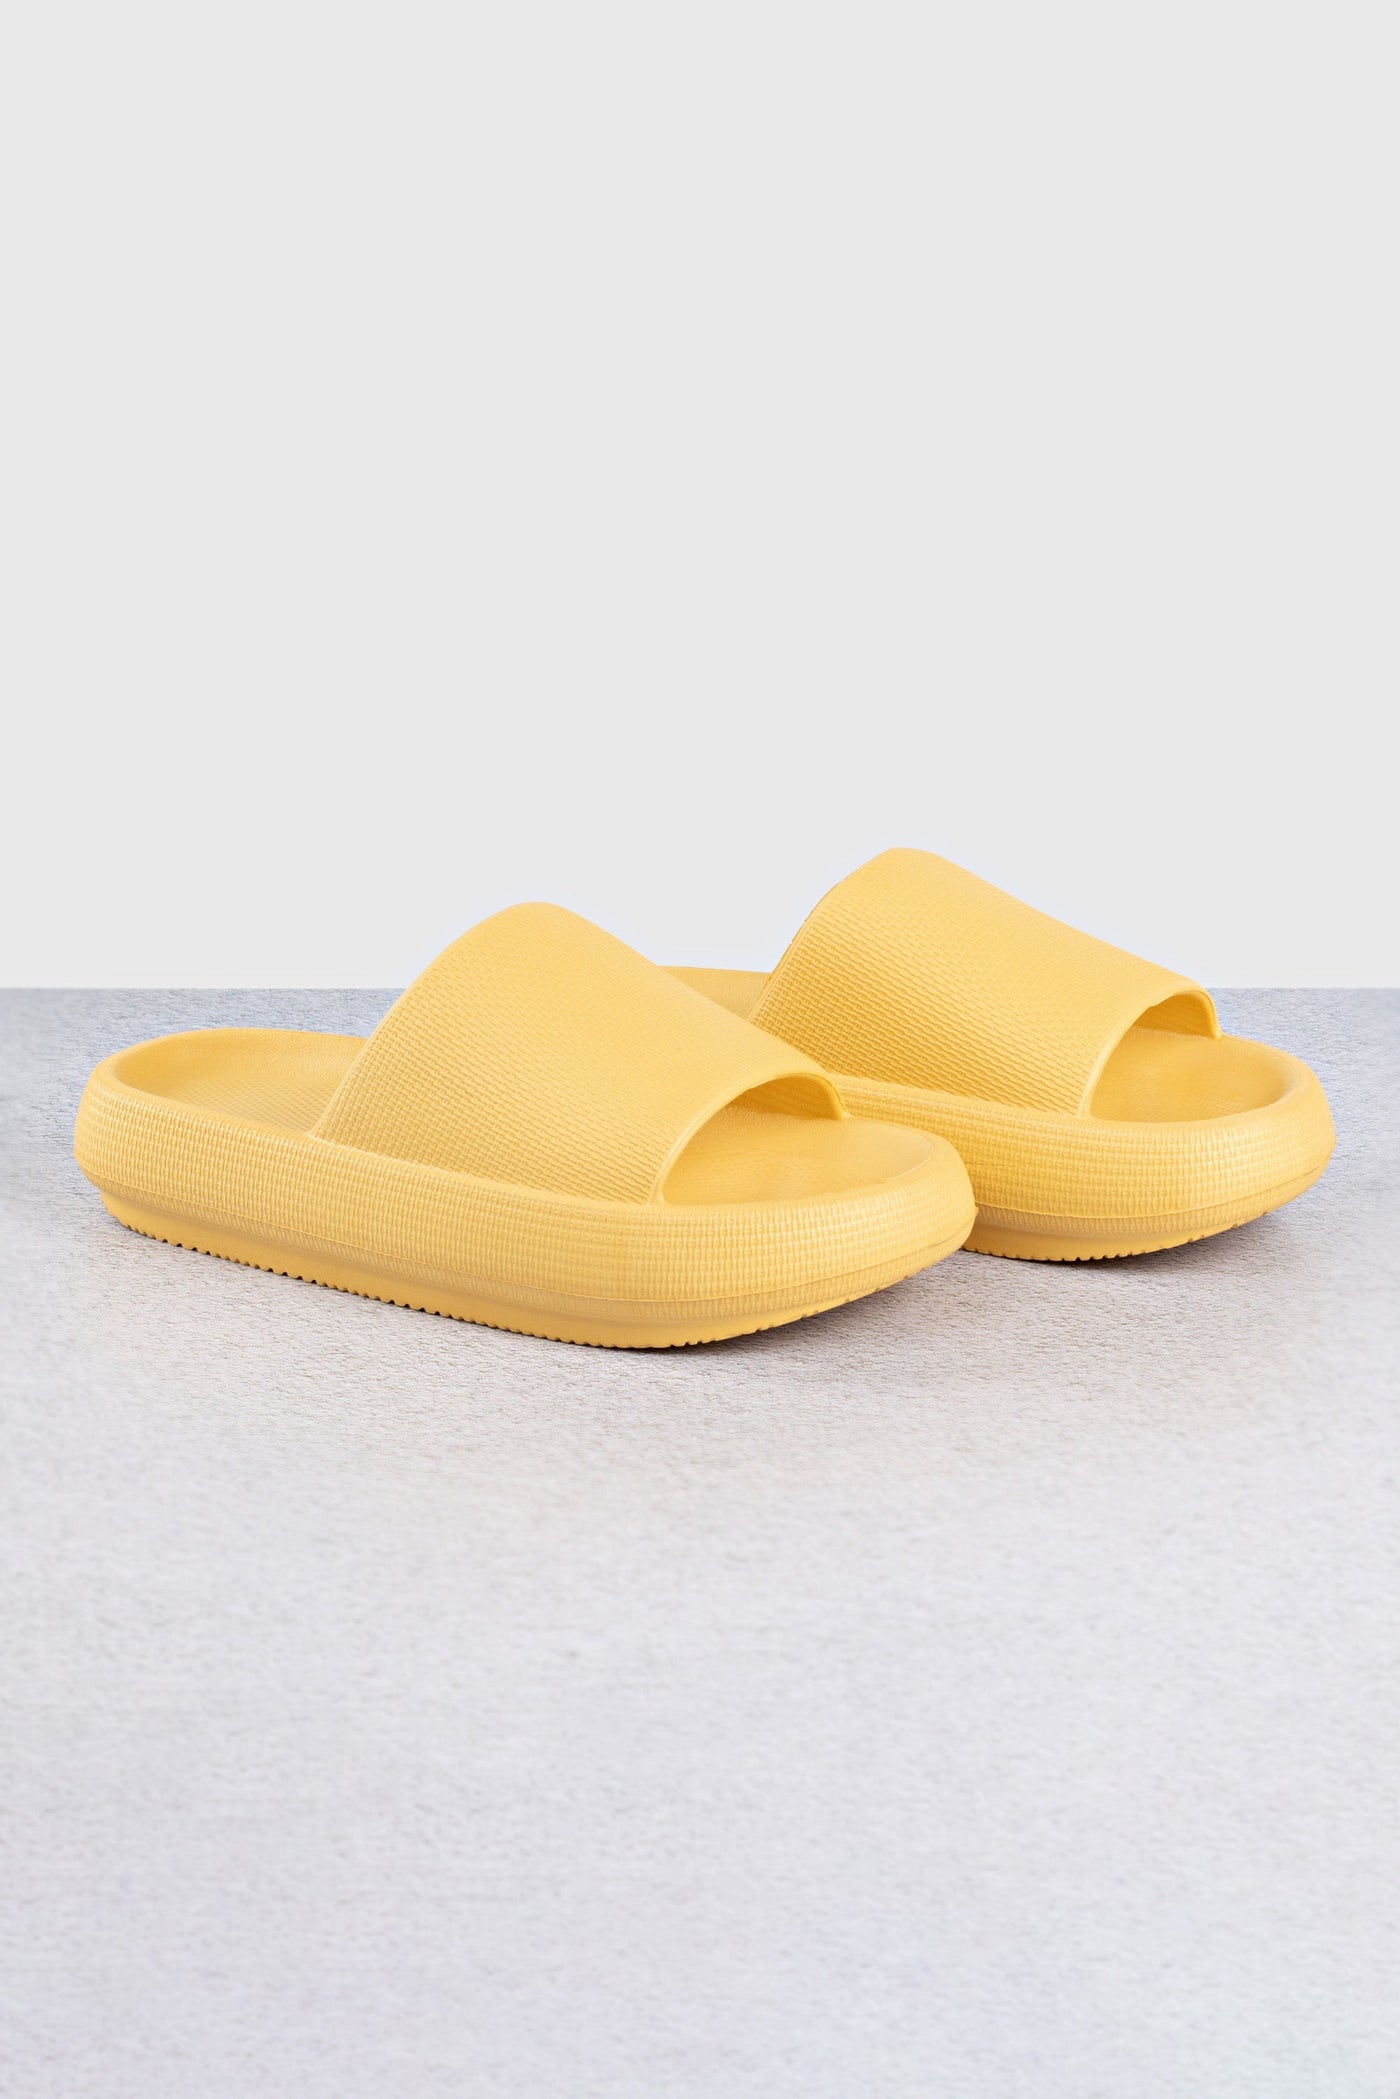 Wellness Slides Yellow Footwear Selfawear 